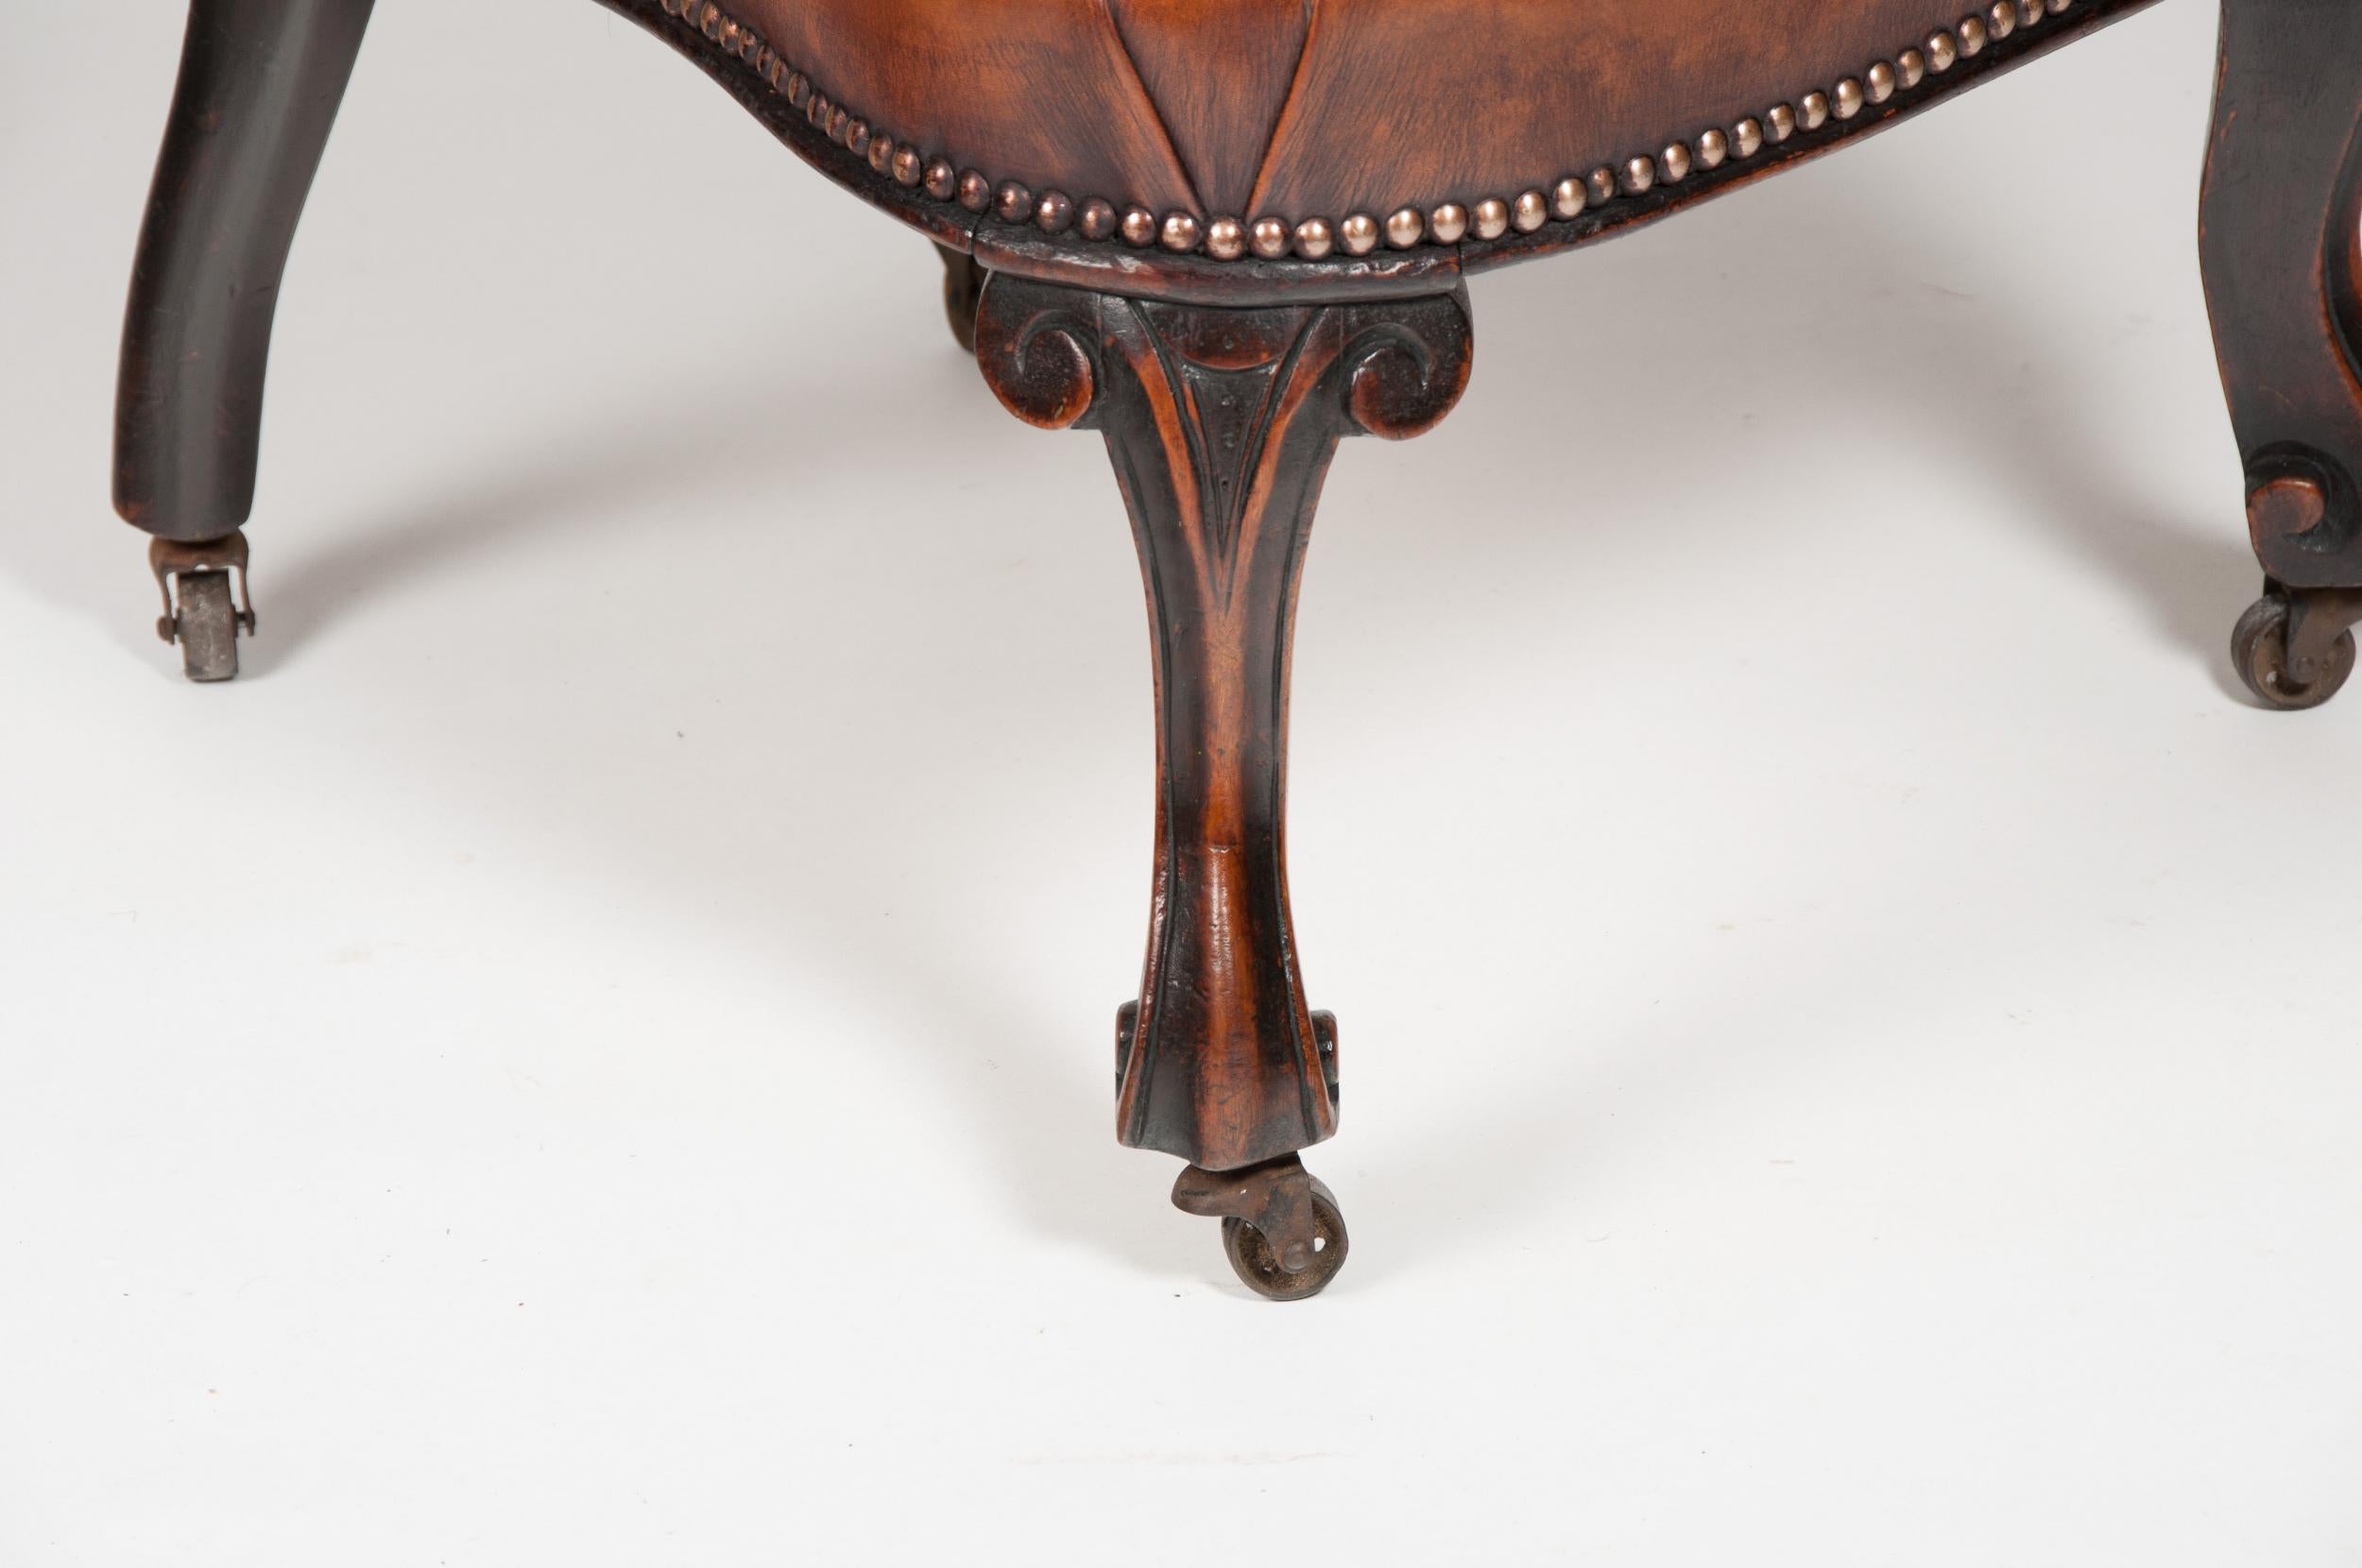 Ein seltener viktorianischer ledergepolsterter Kinderstuhl aus Mahagoni.

Englisch, um 1880.

Dieser seltene Kinderstuhl hat eine geformte, durchbrochene, geschnitzte Rückenlehne mit einem ledergepolsterten Sitz, der von geschnitzten